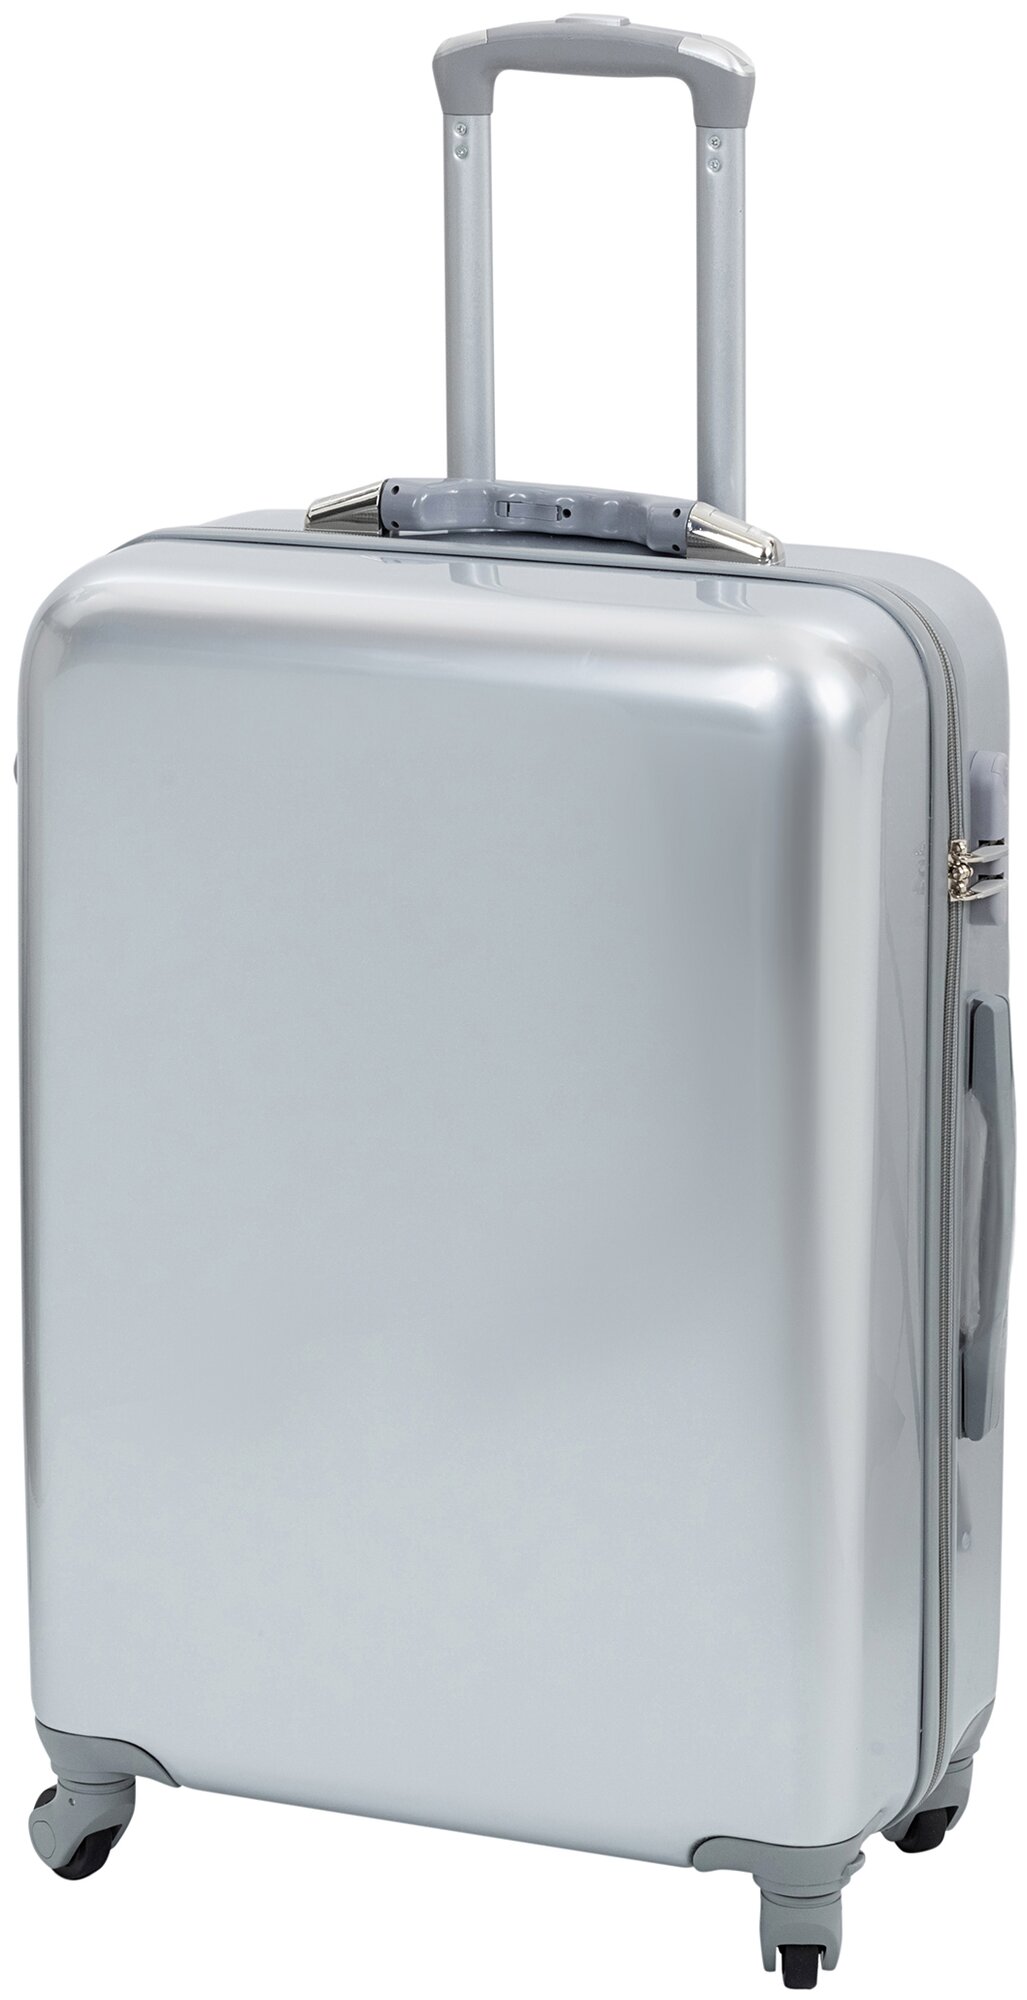 Чемодан на колесах дорожный большой семейный багаж для путешествий l Тевин размер Л 73 см 105 л легкий 3.8 кг прочный поликарбонат Серый металлик